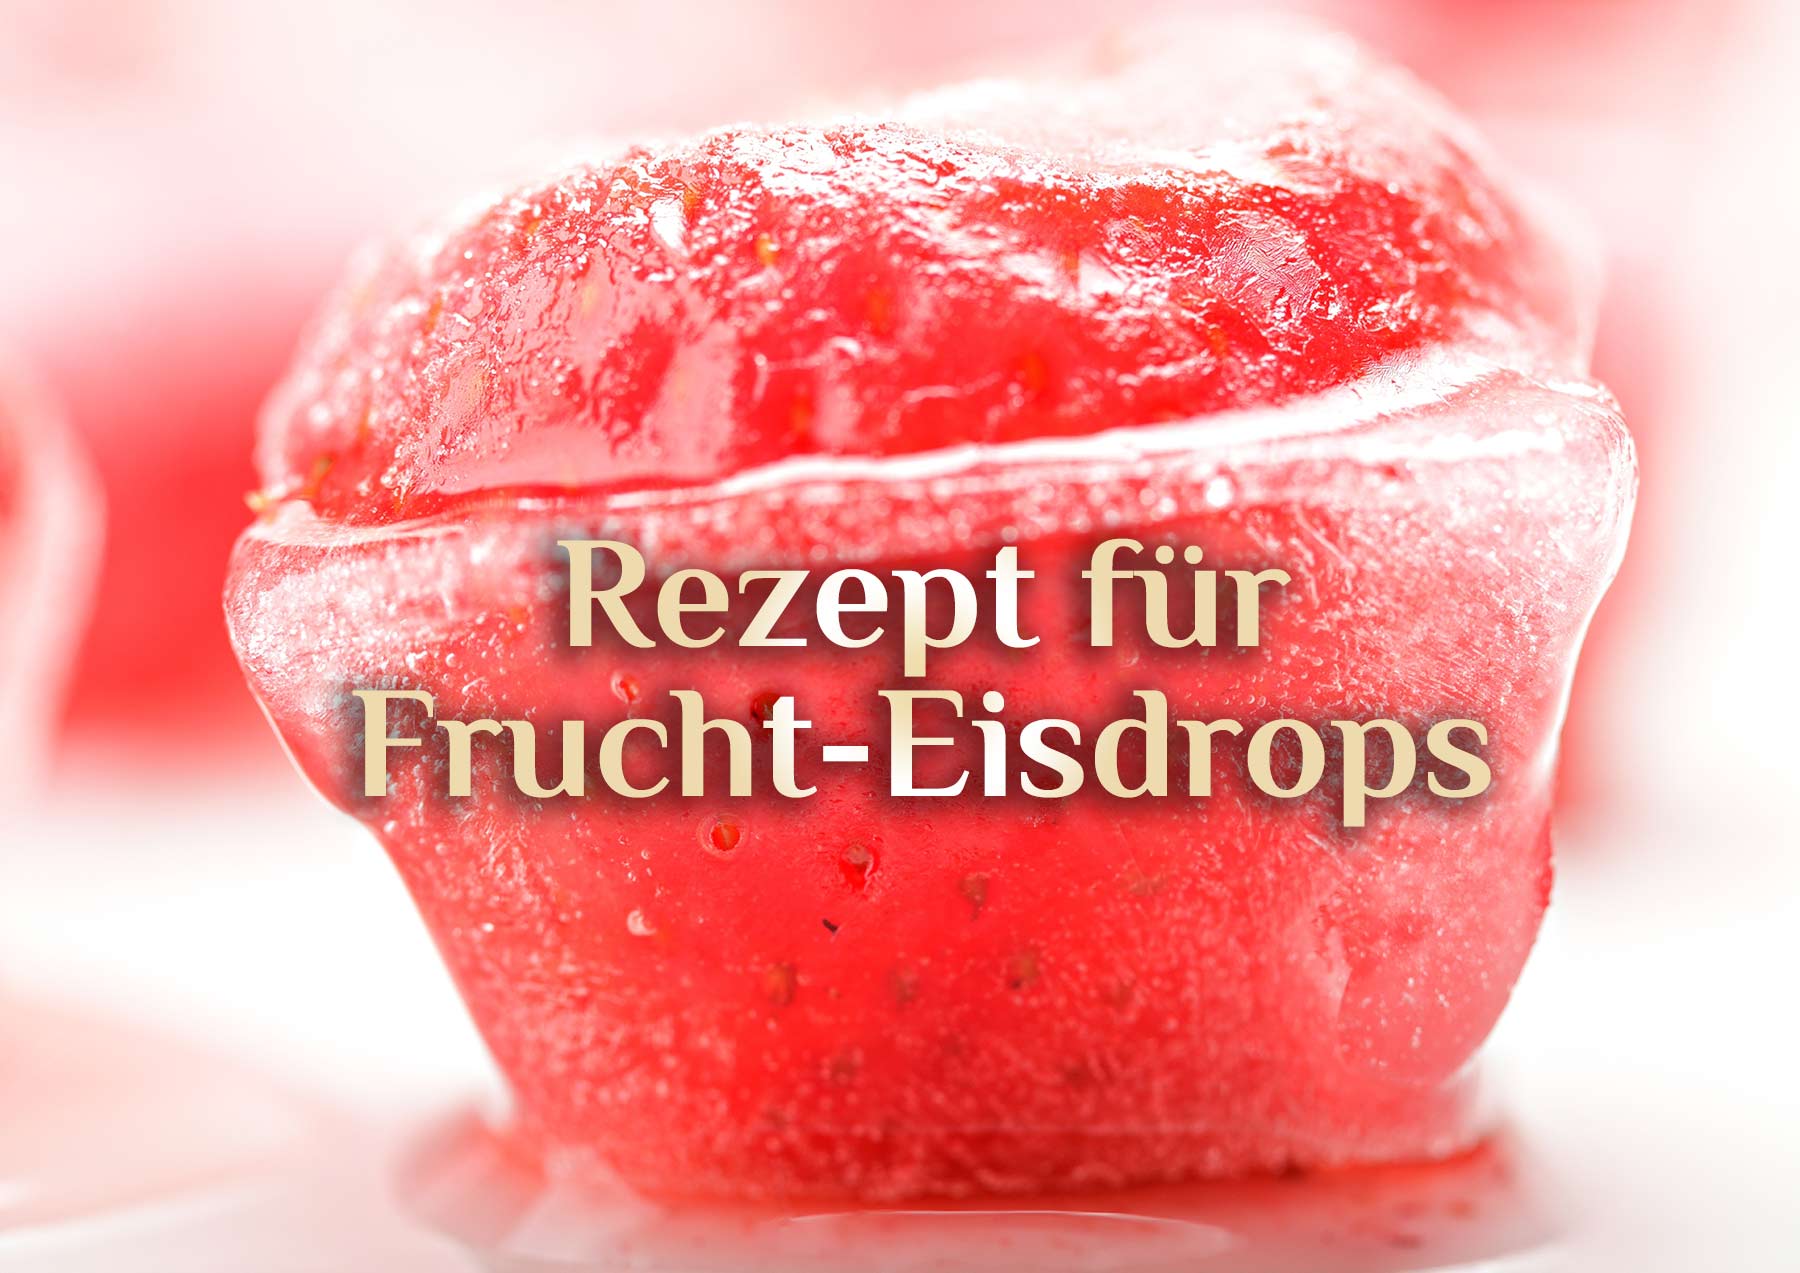 Erdbeer-Eisdrops  🍓 Elementare Leckereien 🍓 Ritual Eisdrops